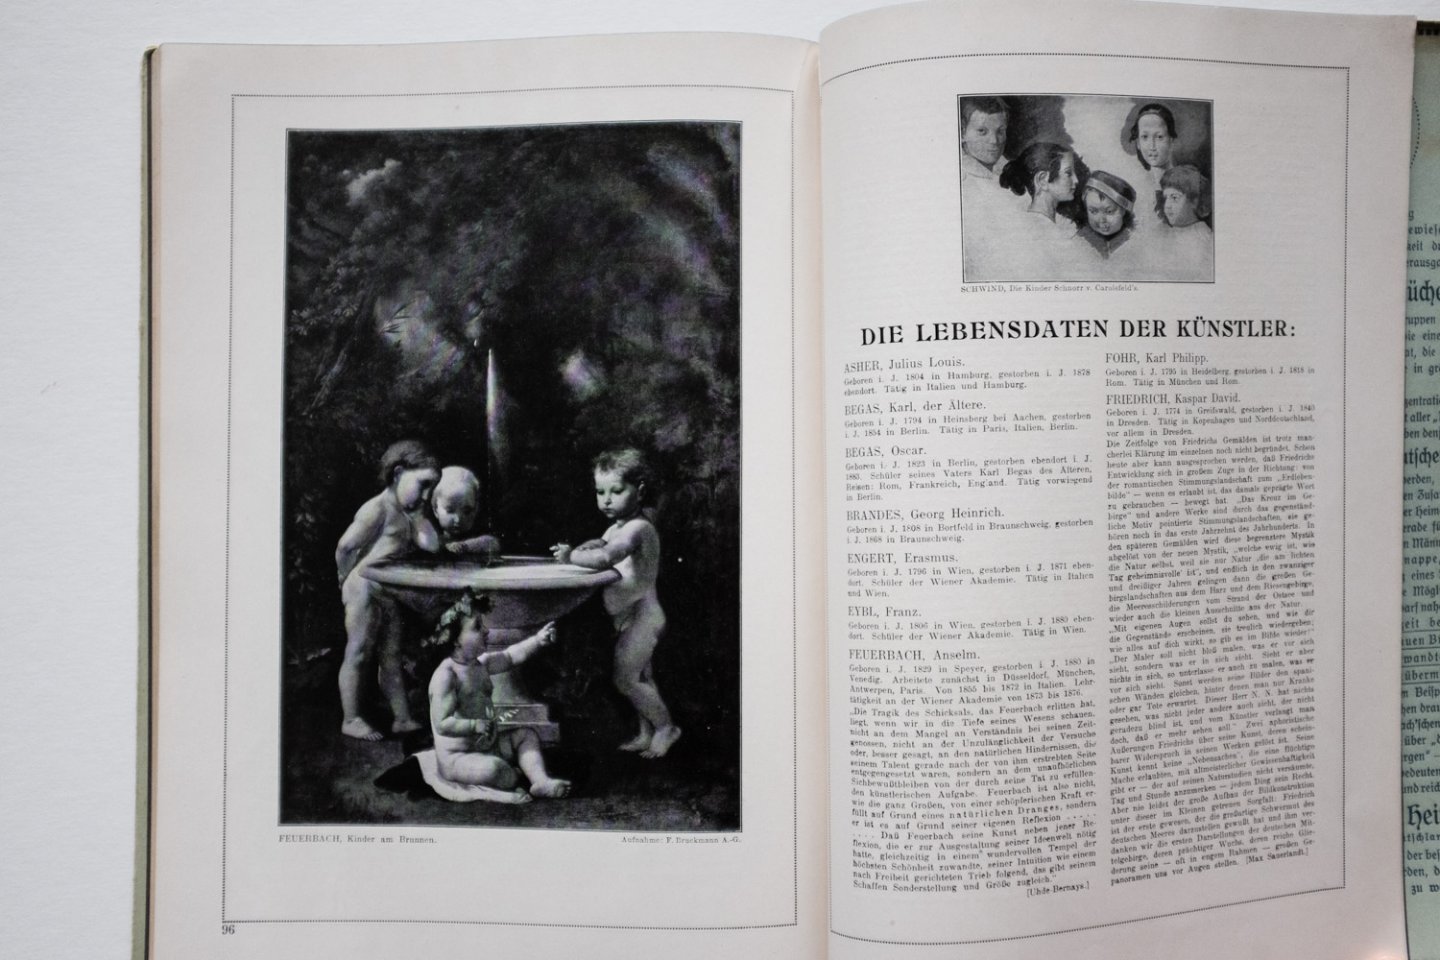 Langewiesche, Robert - Der stille Garten., Deutsche Maler des ersten und zweiten Drittel des 19. Jahrhunderts